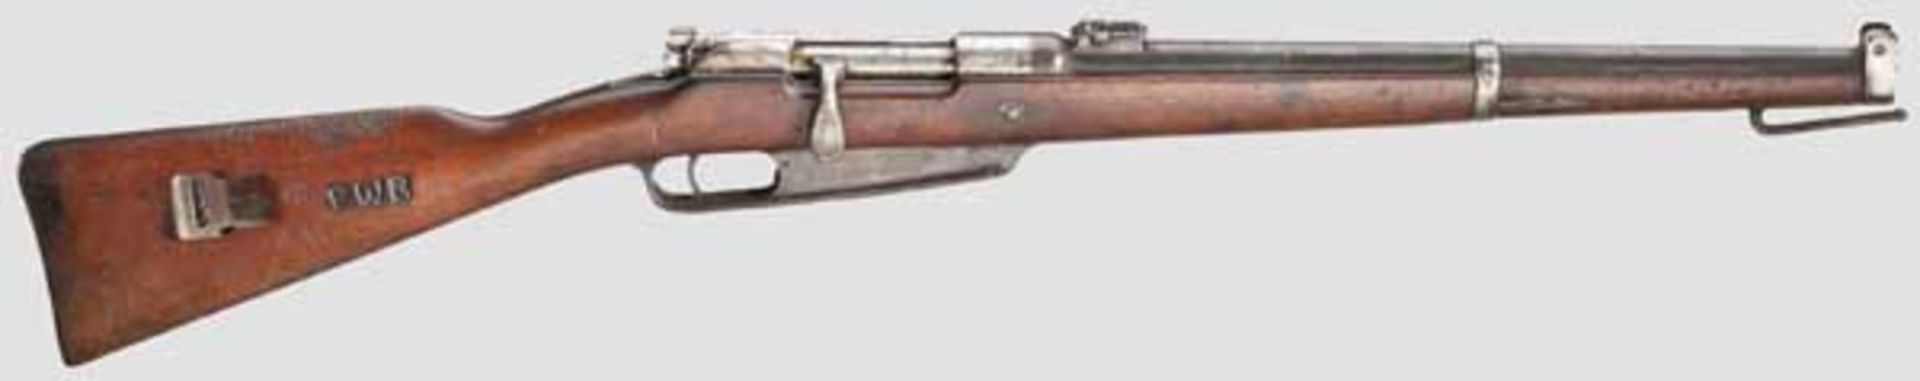 Gewehr 91, Erfurt, 1893, Einwohnerwehr Bayern Kal. 8 x 57, Nr. 7065 e. Nummerngleich in allen Teilen